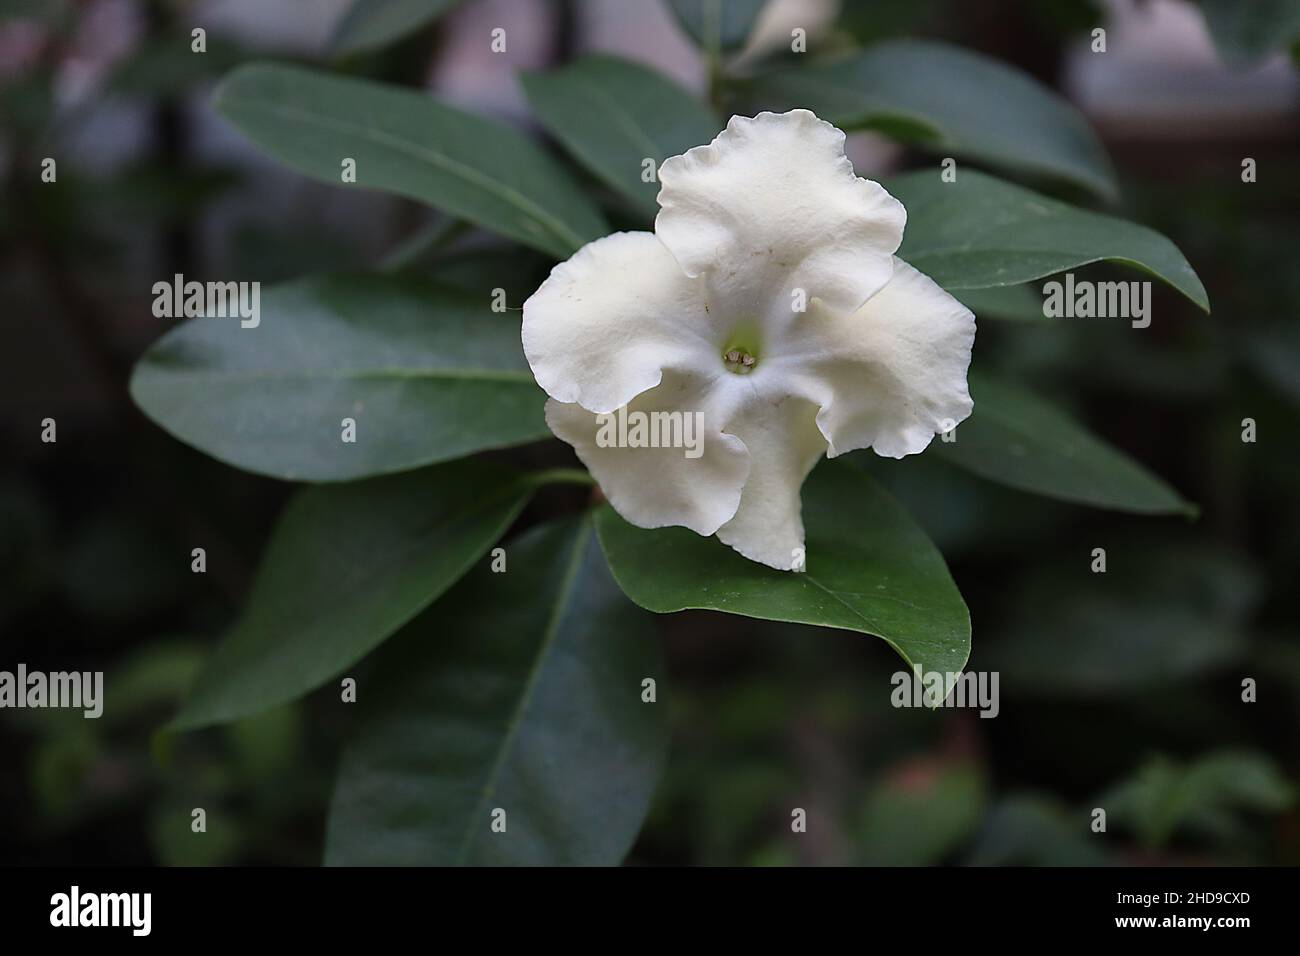 Brunfelsia americana signora della notte – fiori bianchi salverformi con  crema lavati e margini ondulati, foglie verdi scure lucide, dicembre,  Inghilterra, Regno Unito Foto stock - Alamy